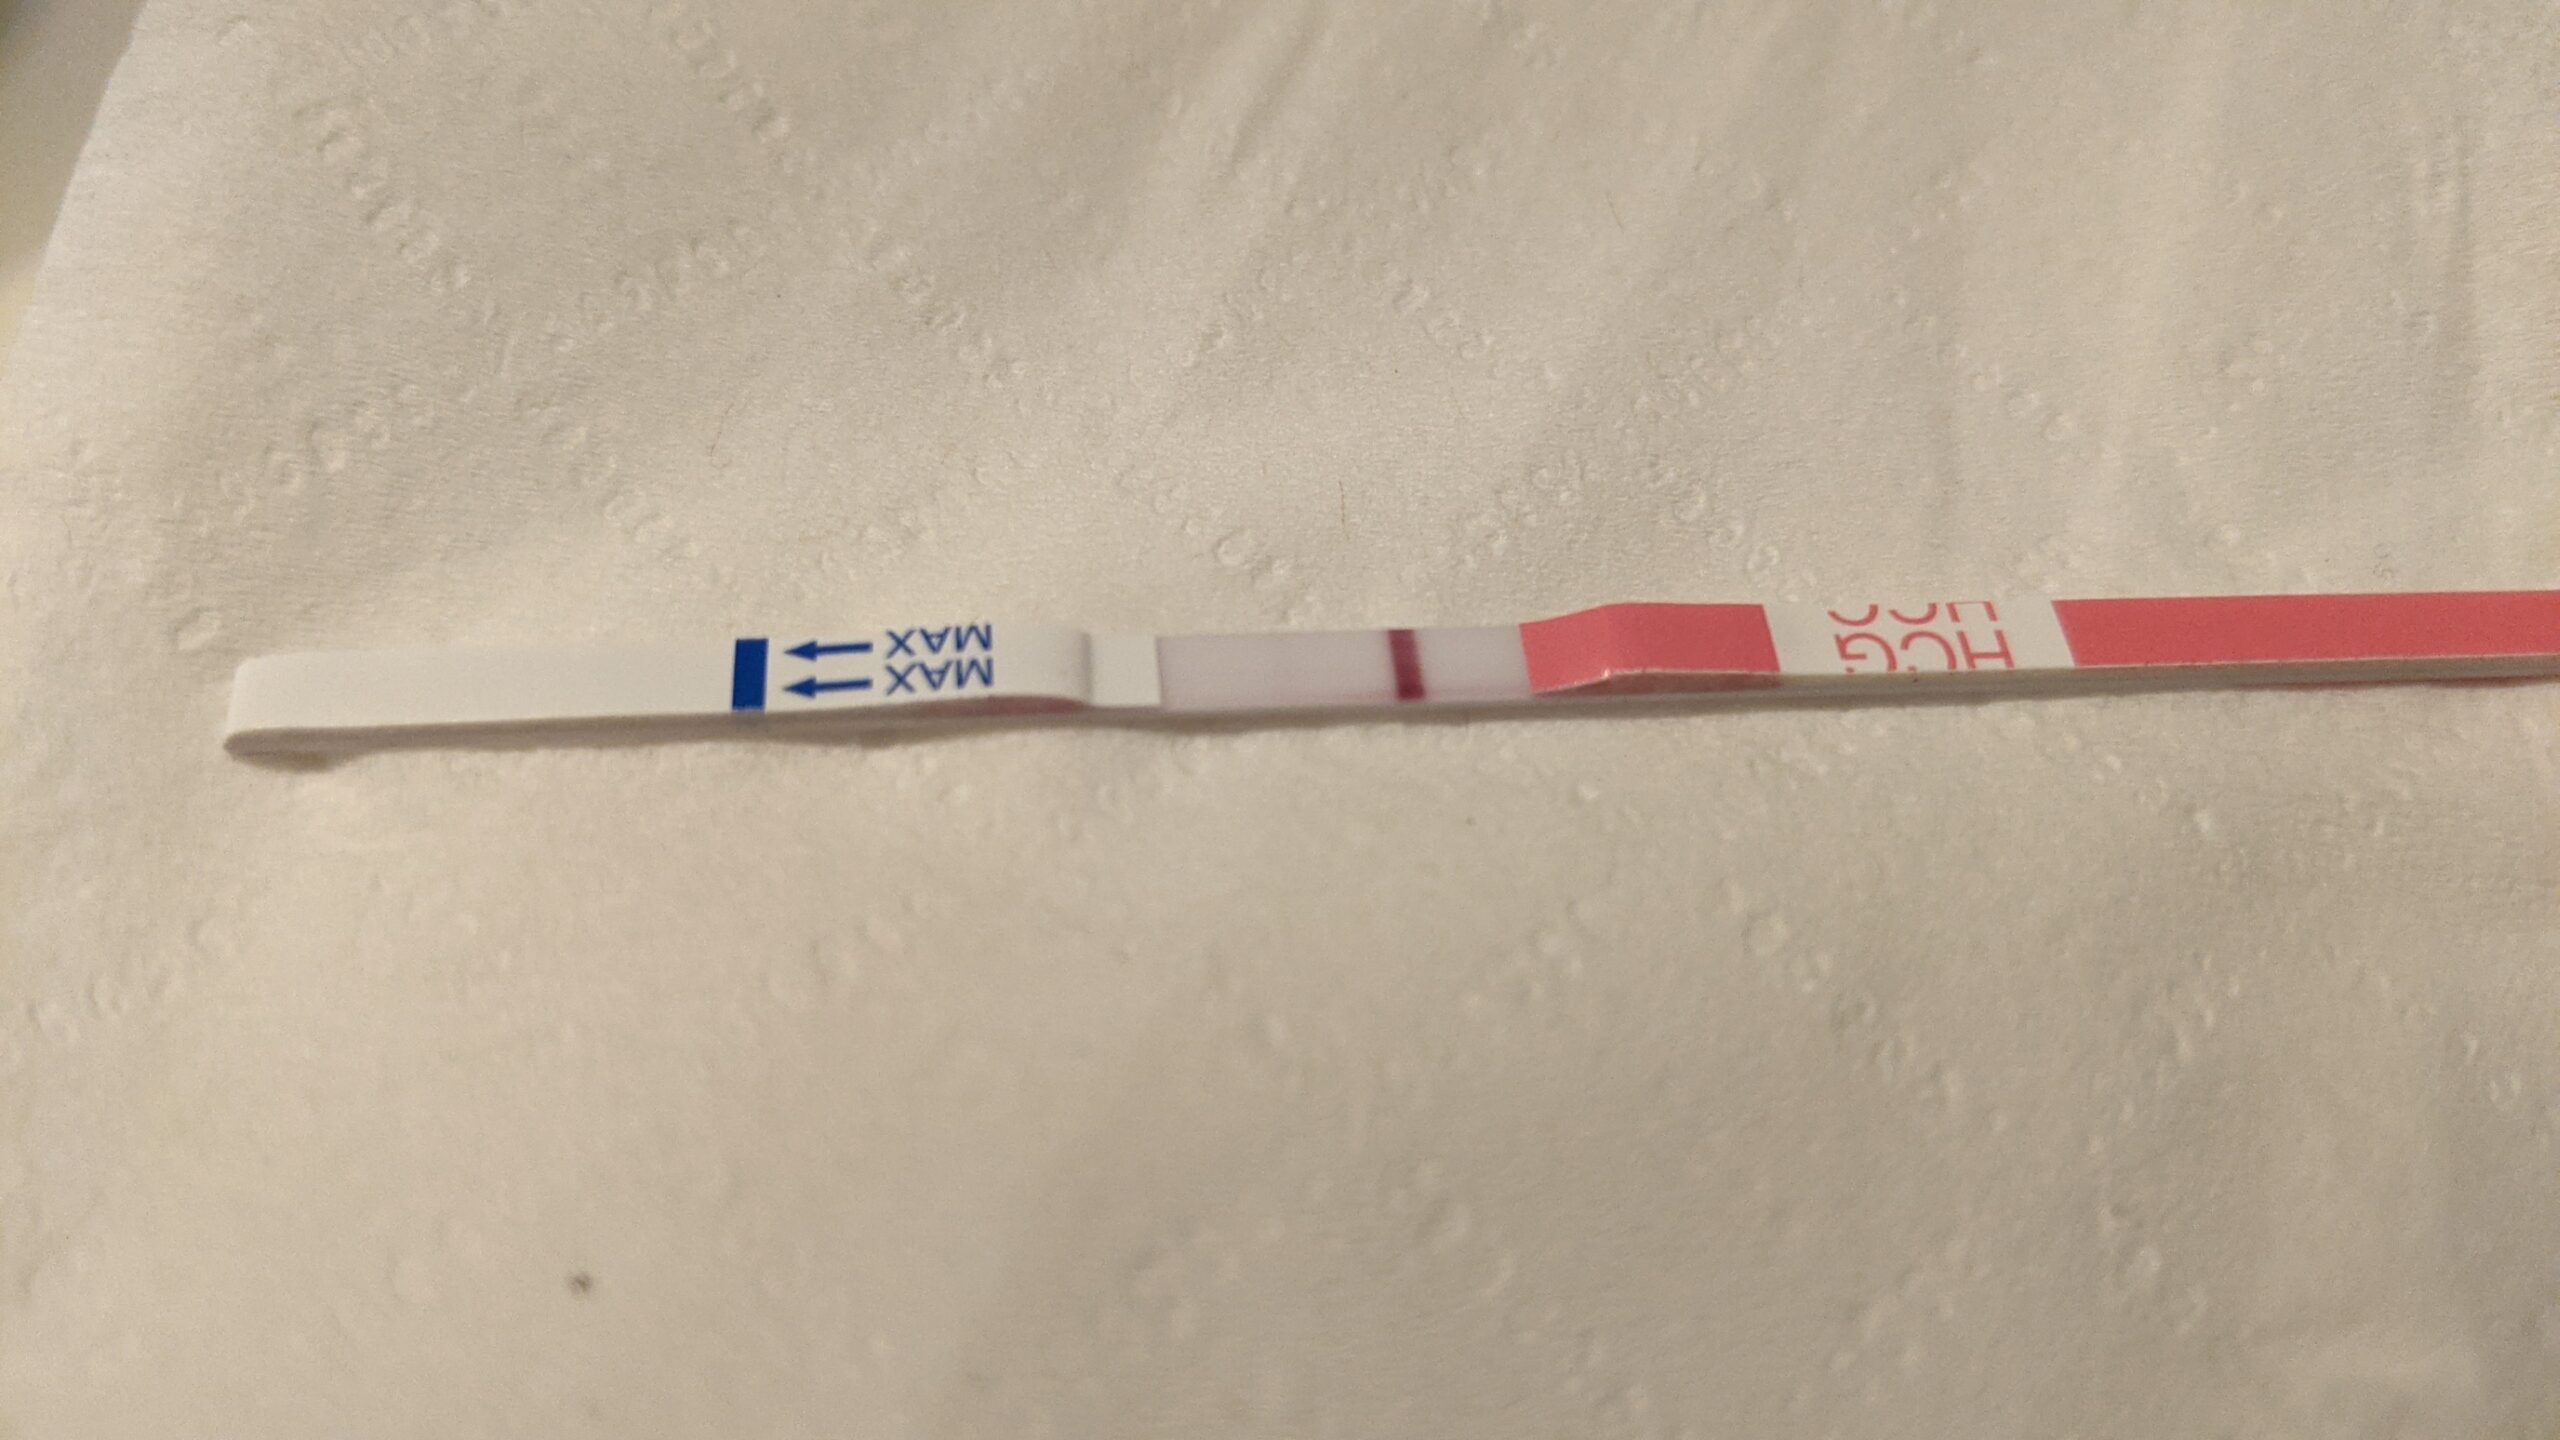 Very faint positive pregnancy test